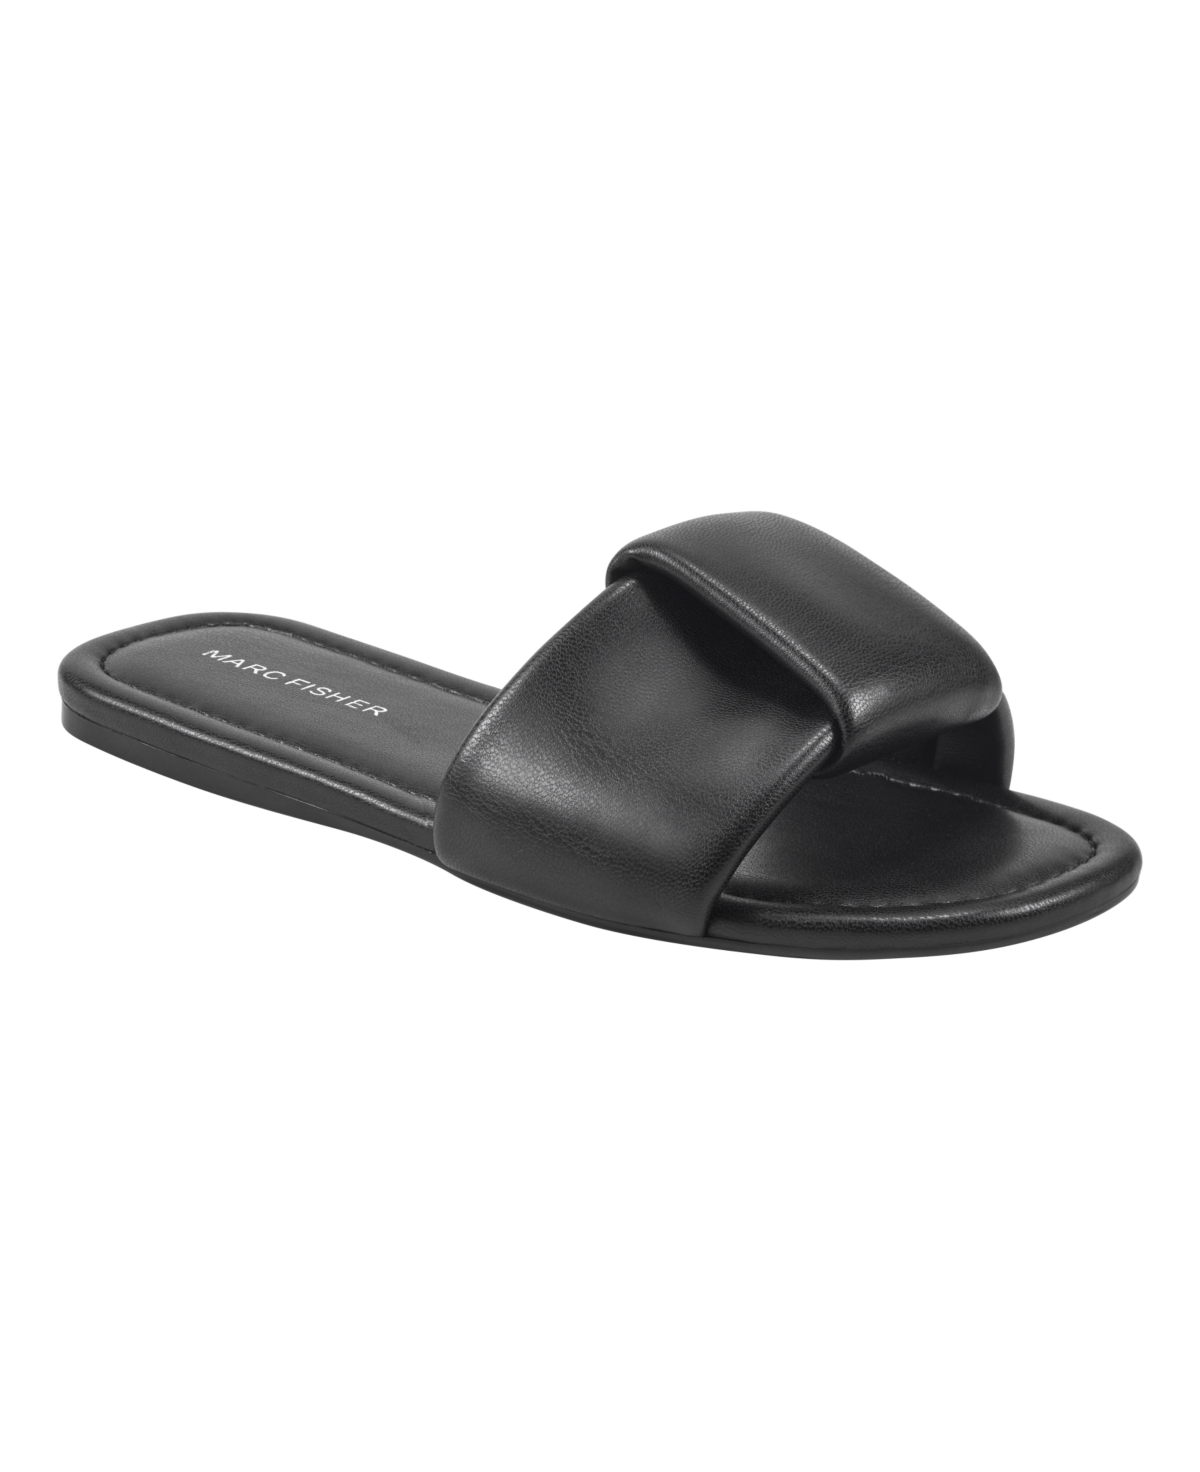 Women's Finlia Almond Toe Slip-On Casual Sandals - Black - Faux Leather